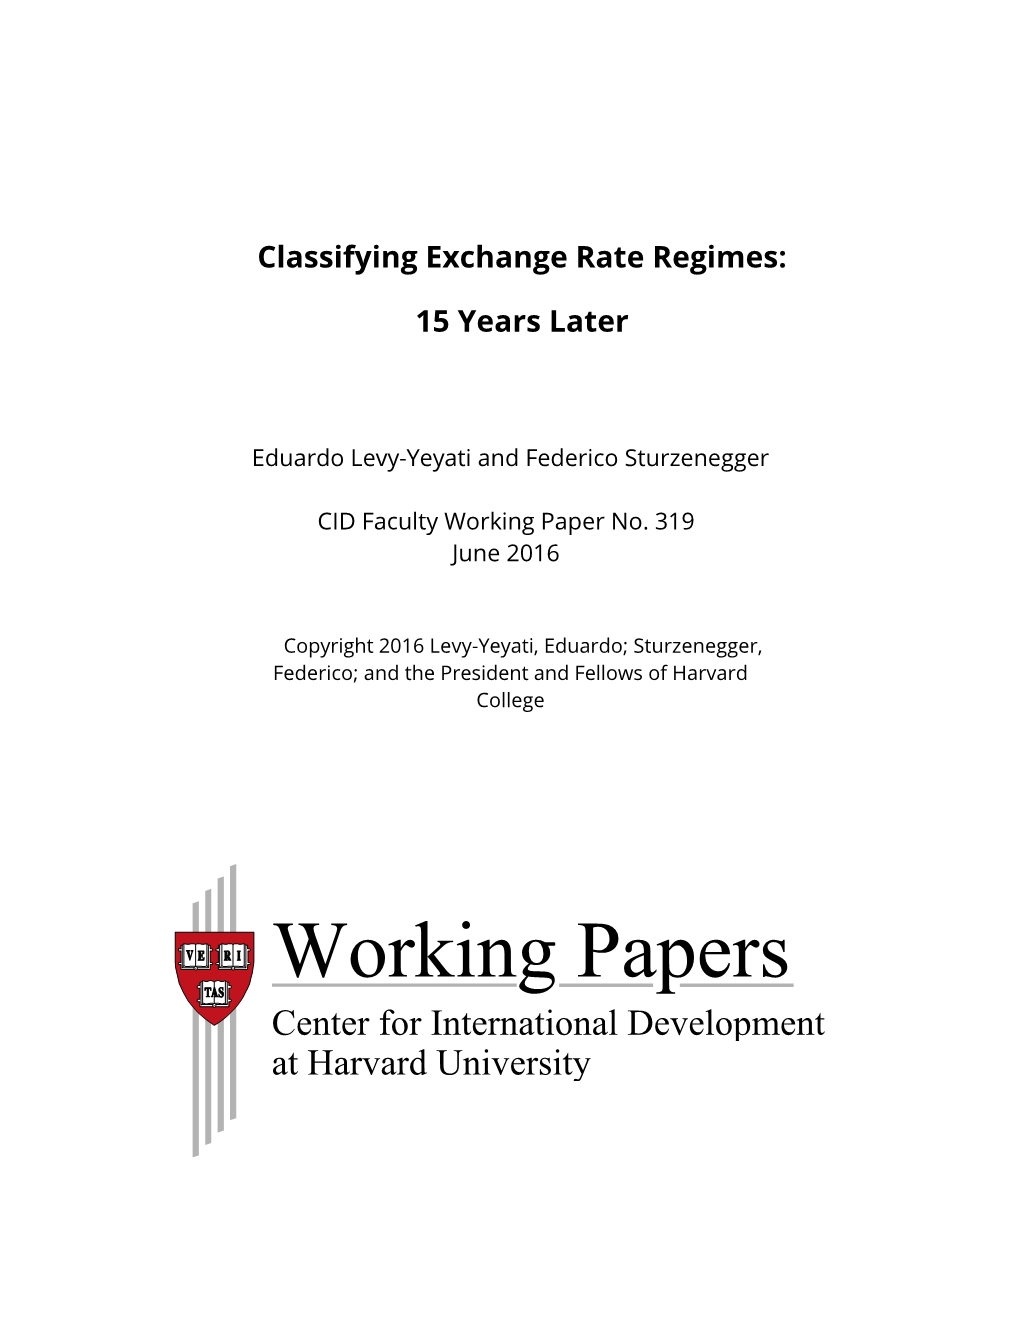 Classifying Exchange Rate Regimes: 15 Years Later 1 Eduardo Levy-Yeyati, Federico Sturzenegger